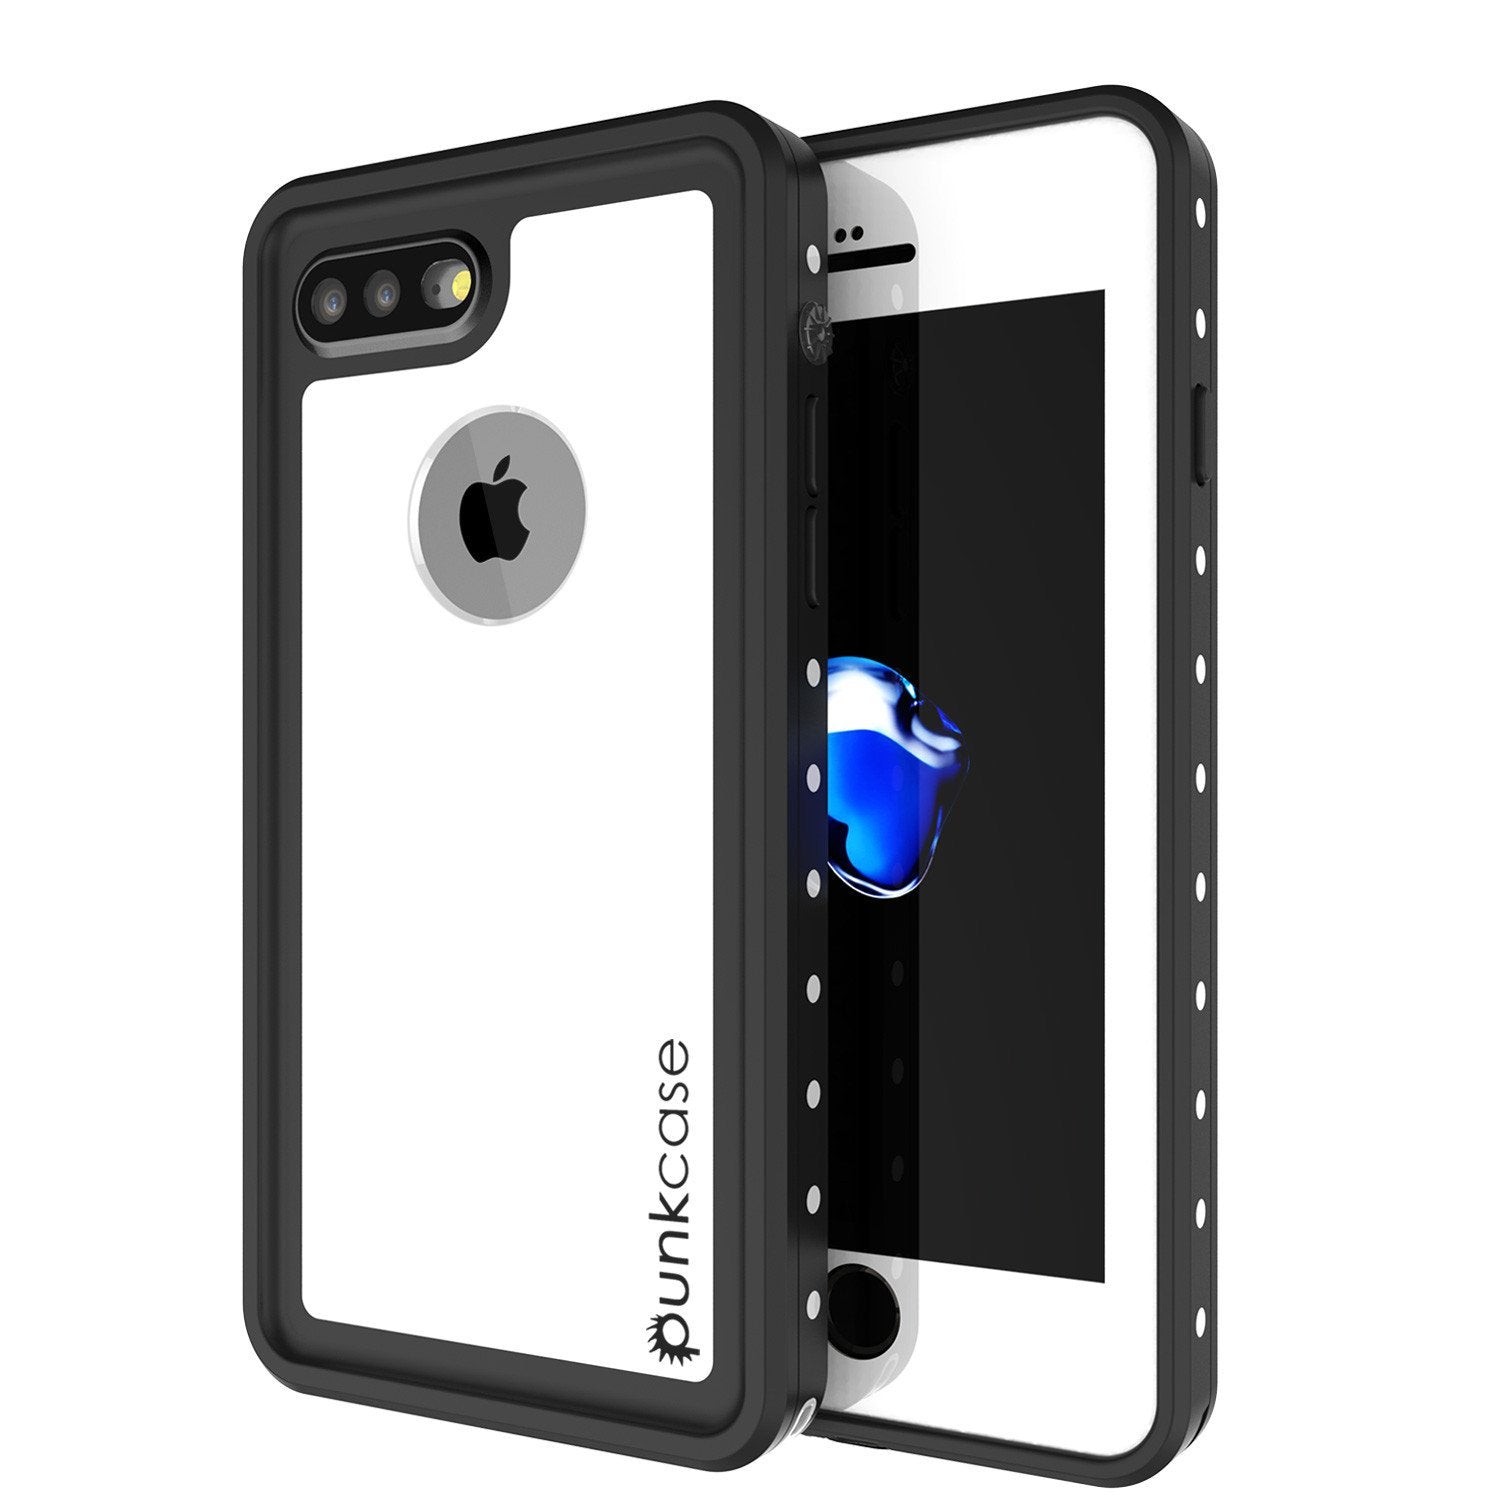 iPhone 7s Plus Waterproof Case, Punkcase [White] [StudStar Series] [Slim Fit] [IP68 Certified] [Shockproof] [Dirtproof] [Snowproof] Armor Cover for Apple iPhone 7 Plus & 7s +